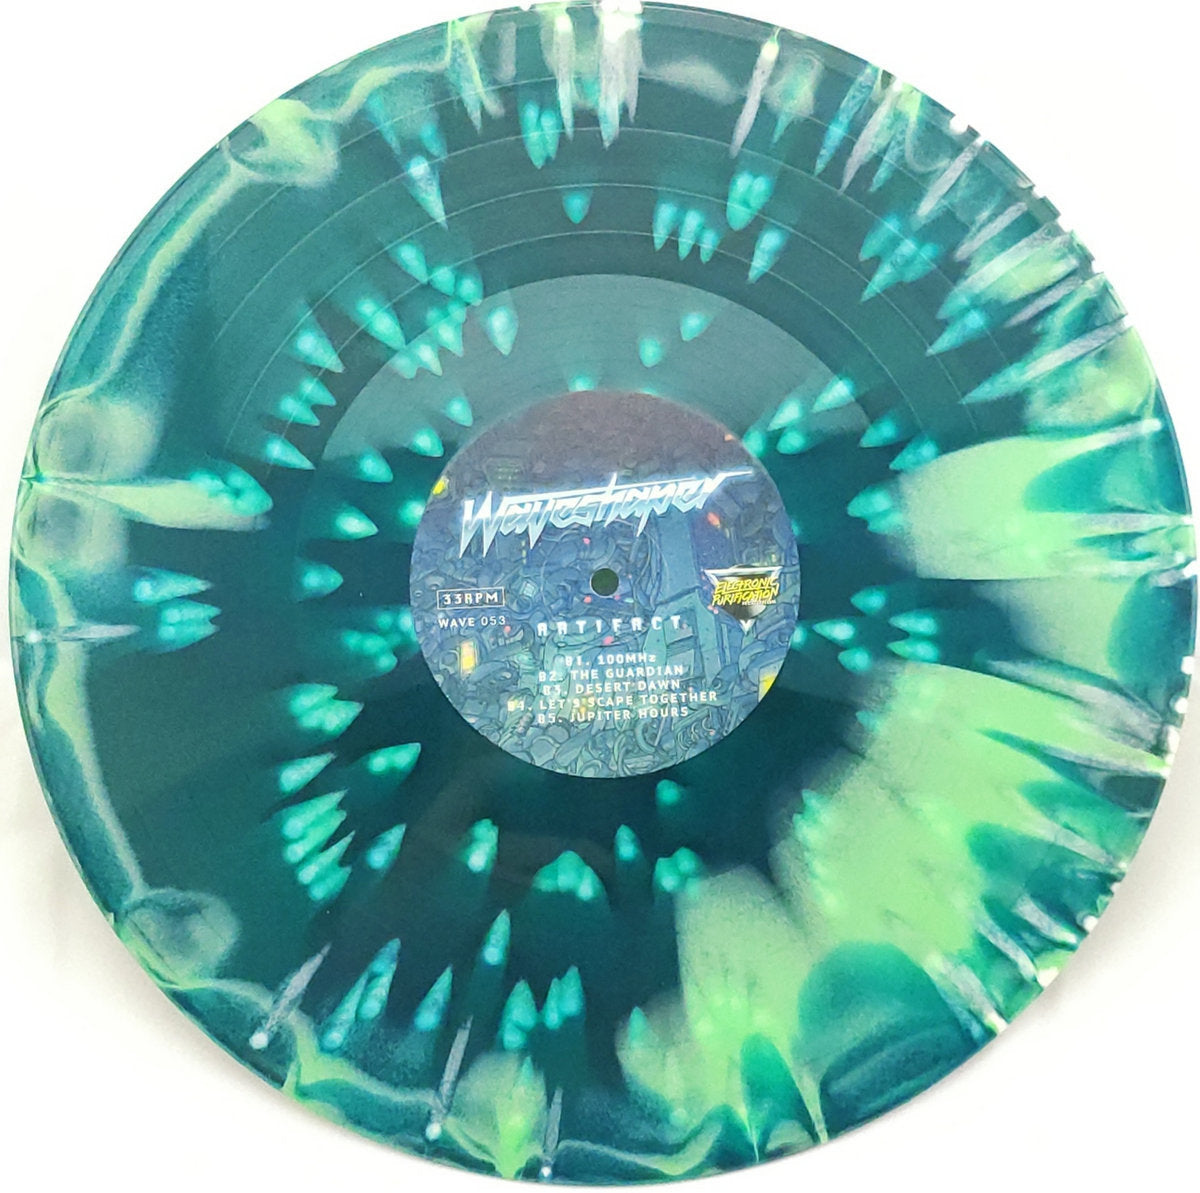 [SOLD OUT] WAVESHAPER "Artifact" vinyl LP (color, 180g, 4 art prints)